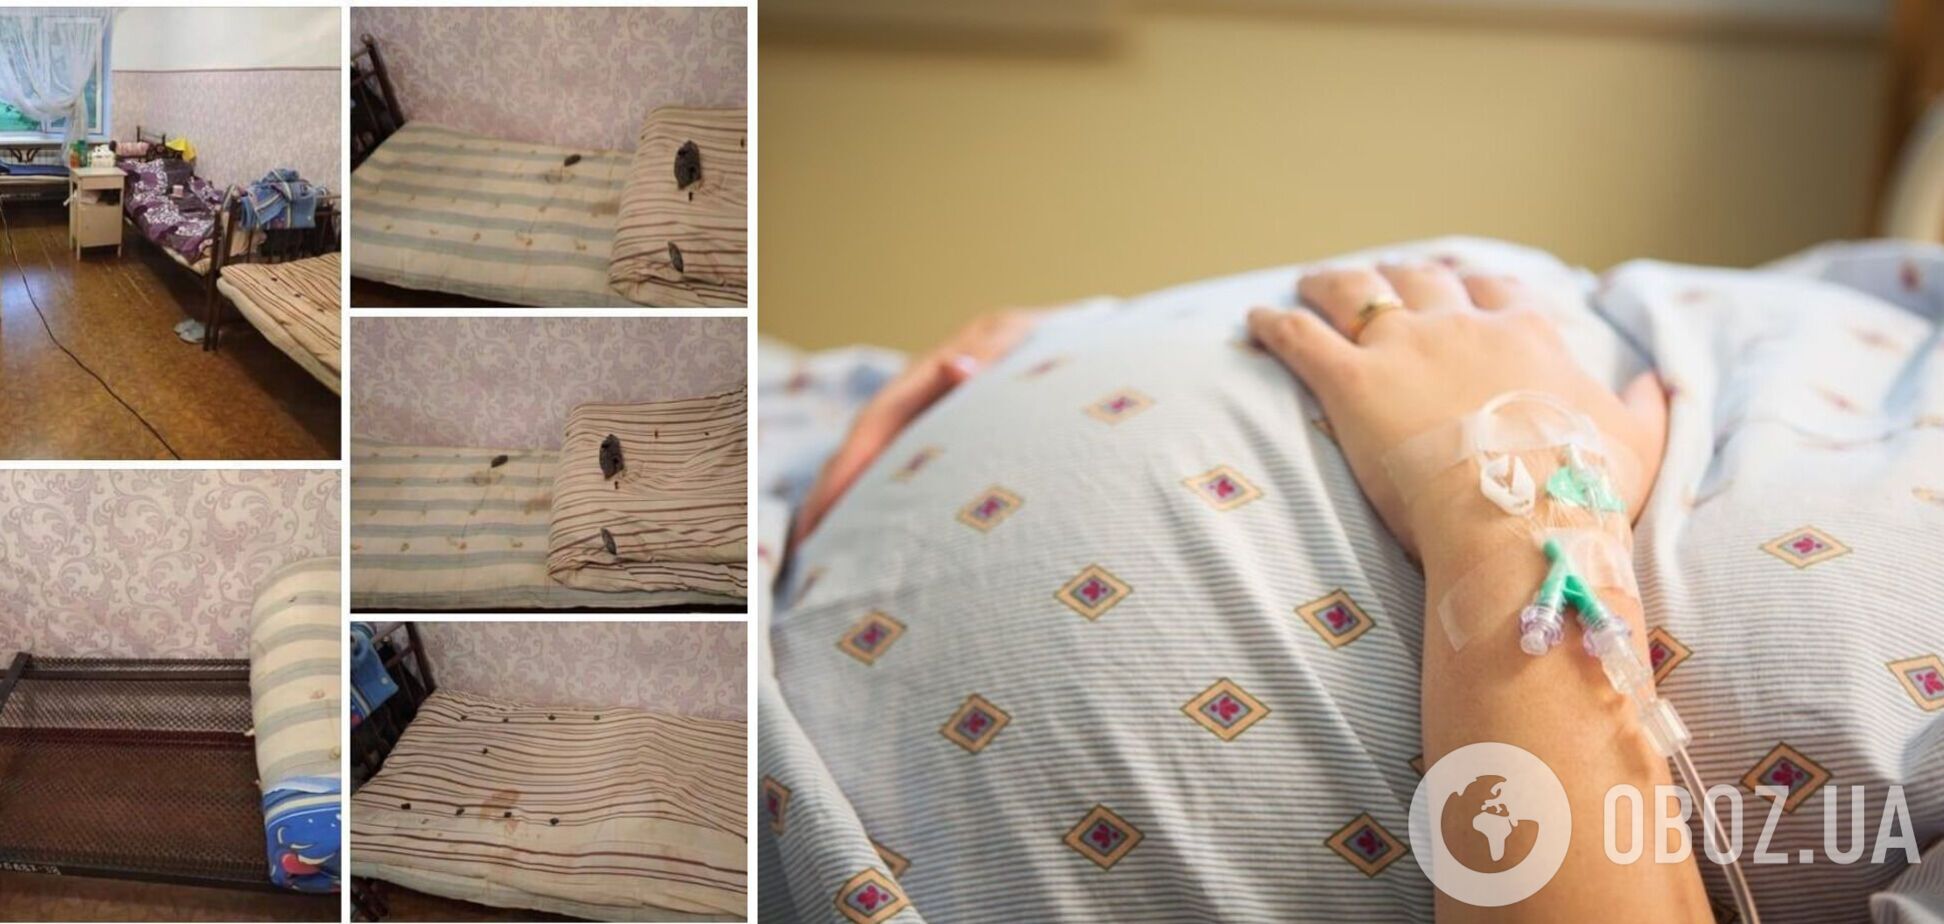 Опубликованы фото отделения для беременных в Лисичанске с ободранными и грязными матрацами